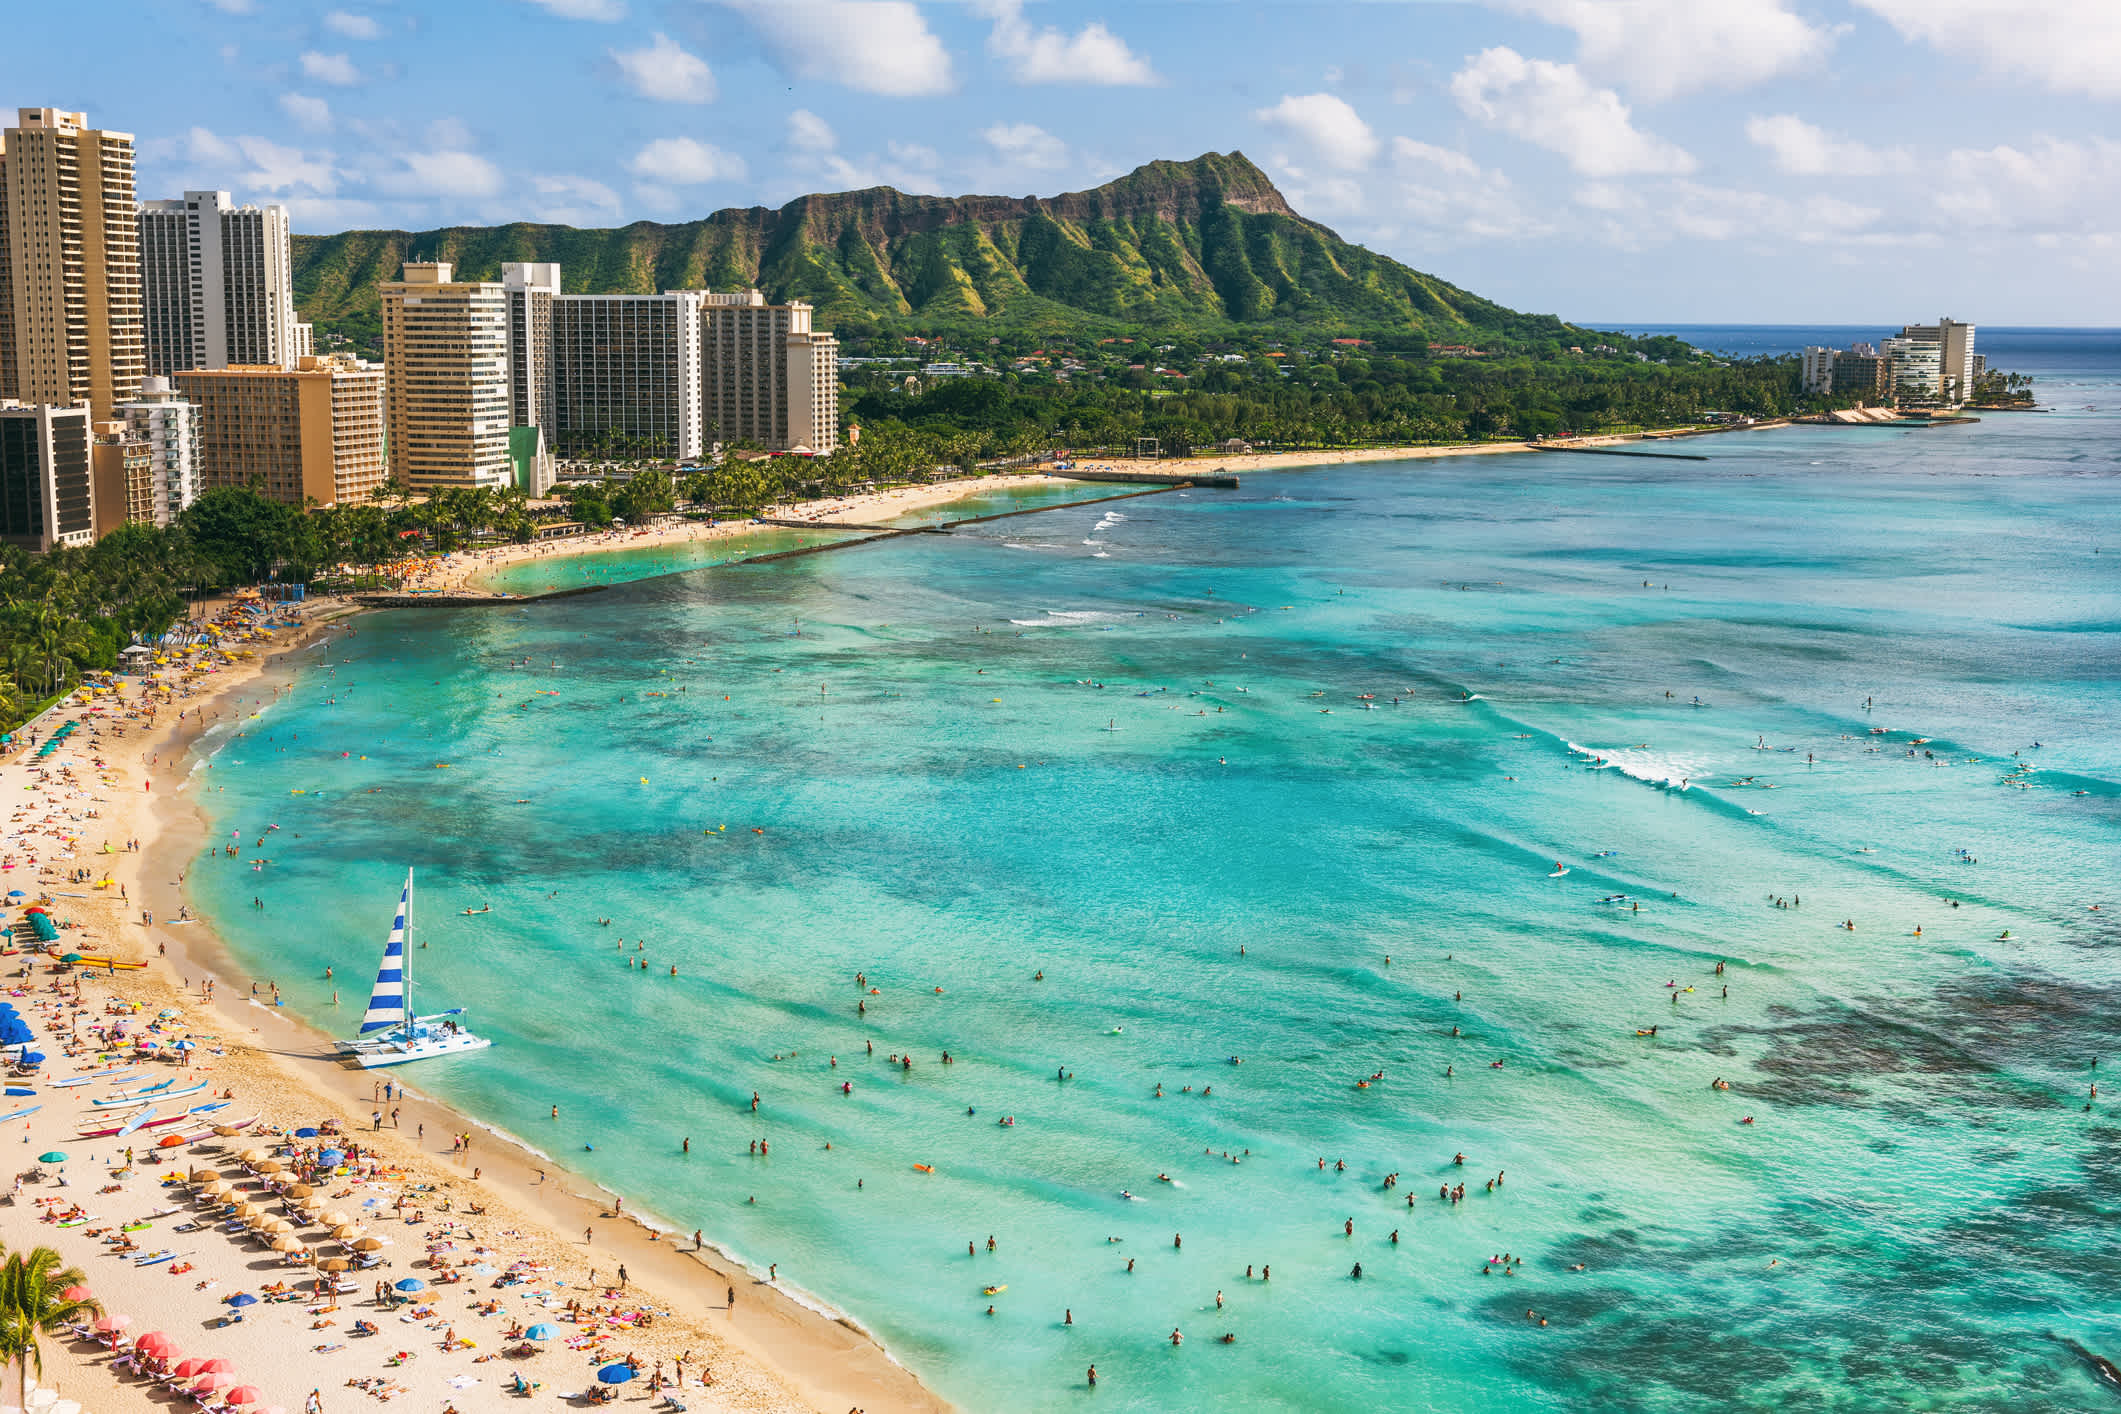 Hawaii Strand Honolulu Stadt Reiselandschaft von Waikiki Strand und Diamond Head Berggipfel bei Sonnenuntergang, Oahu Insel, USA Urlaub.